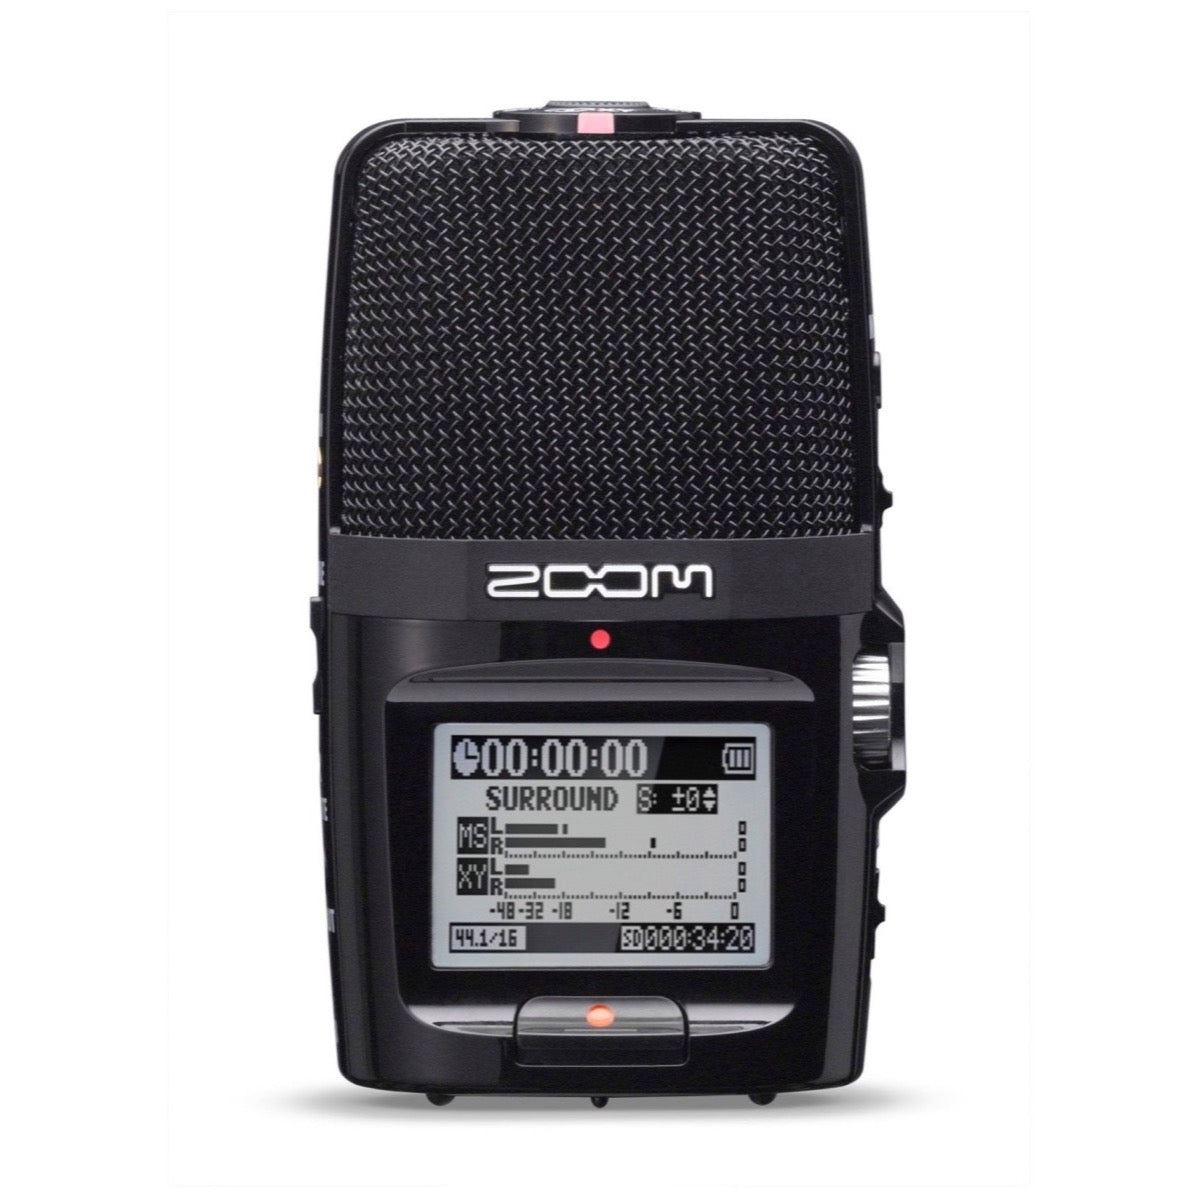 Zoom H2n Handheld Digital Recorder